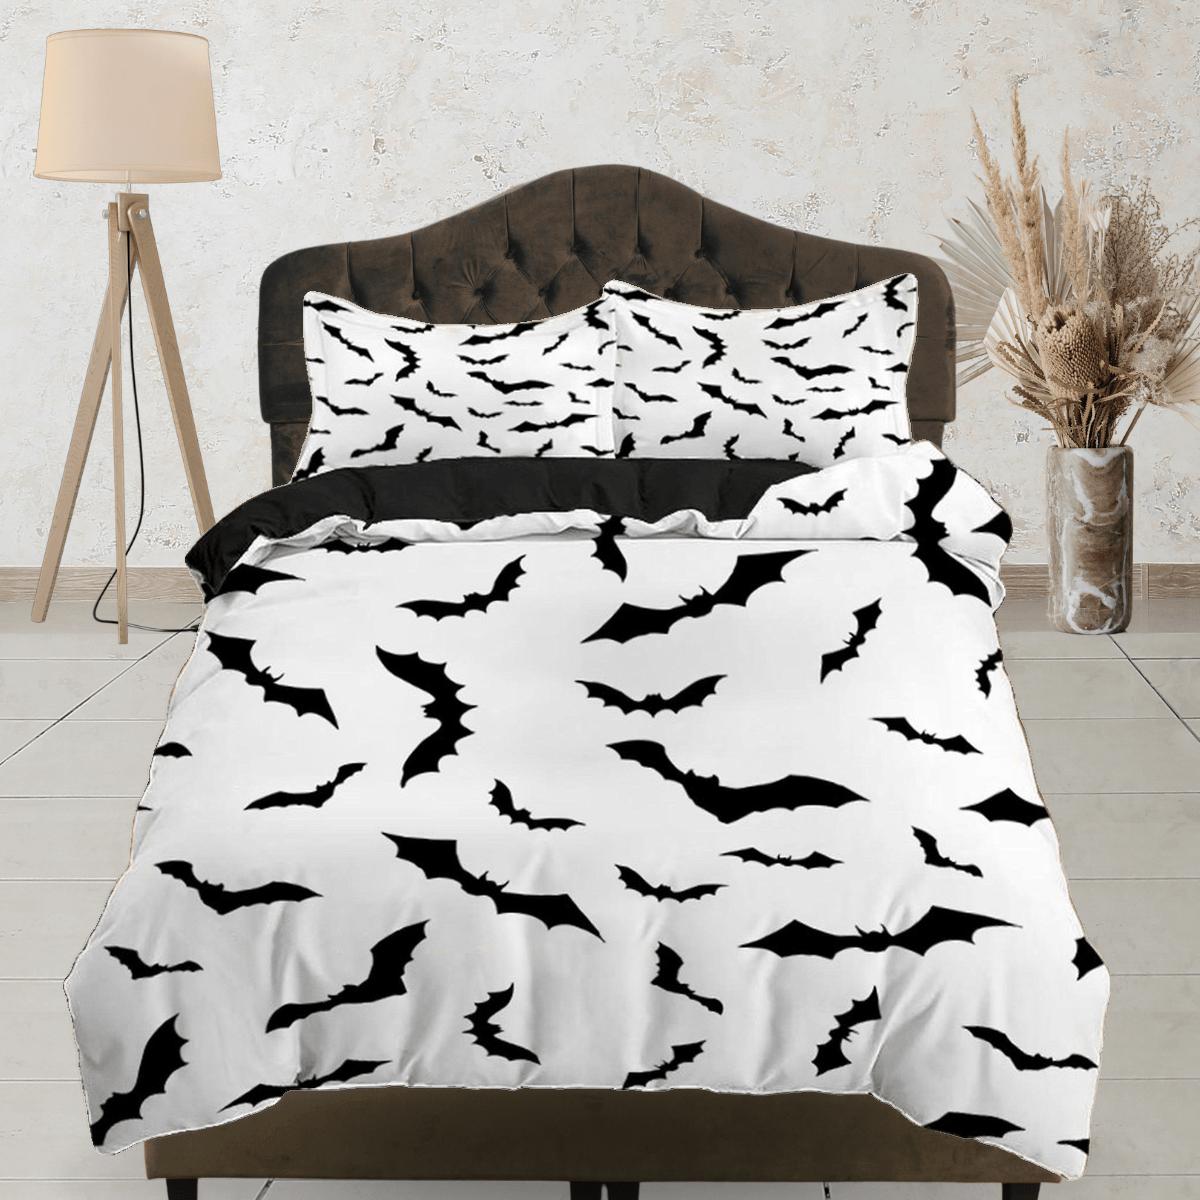 daintyduvet Bat prints halloween full size bedding & pillowcase, duvet cover set dorm bedding, halloween decor, nursery toddler bedding, halloween gift